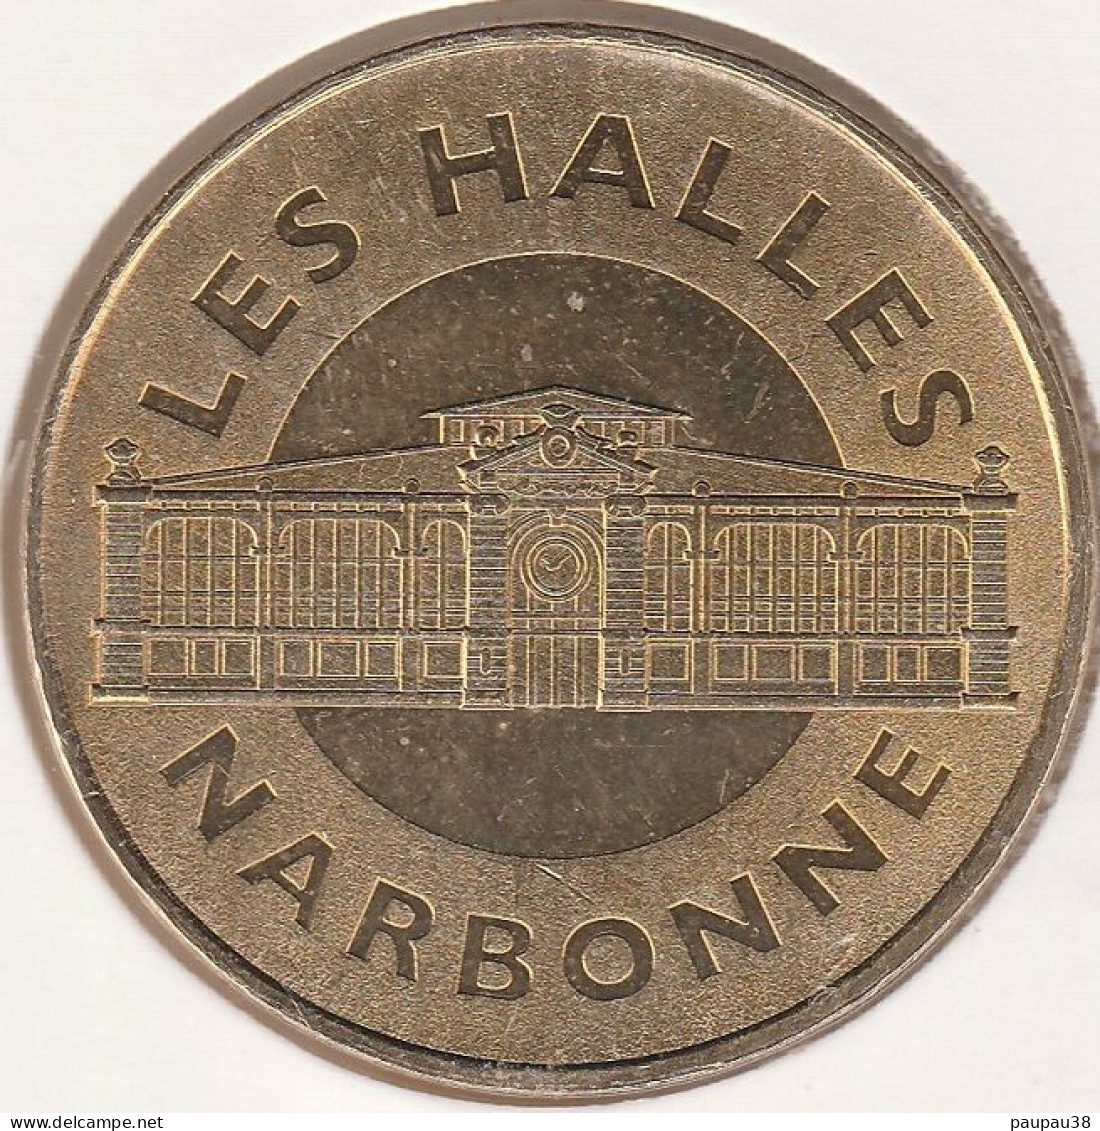 MONNAIE DE PARIS 2012 - 11 NARBONNE Philaboutique - Les Halles - 2012